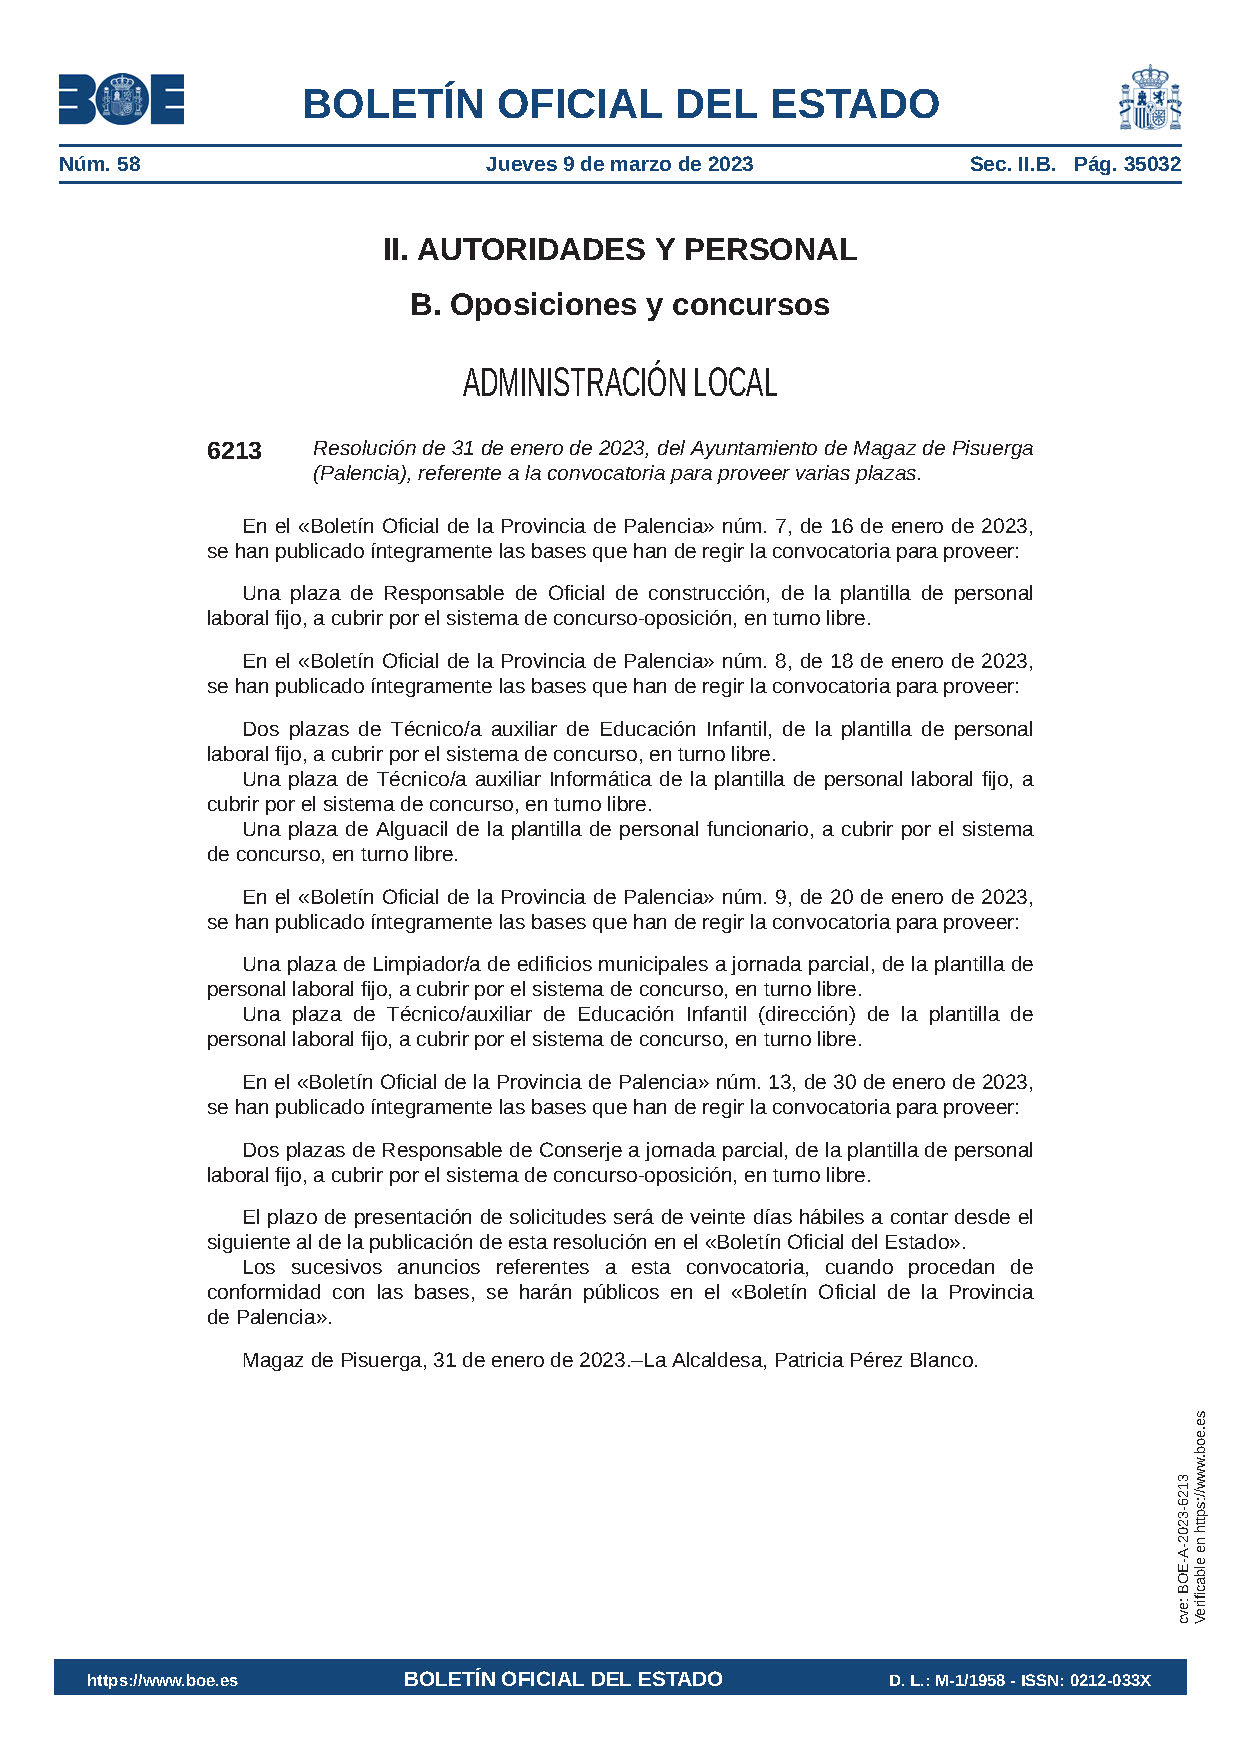 Resolución de 31 de enero de 2023, del Ayuntamiento de Magaz de Pisuerga (Palencia), referente a la convocatoria para proveer varias plazas.